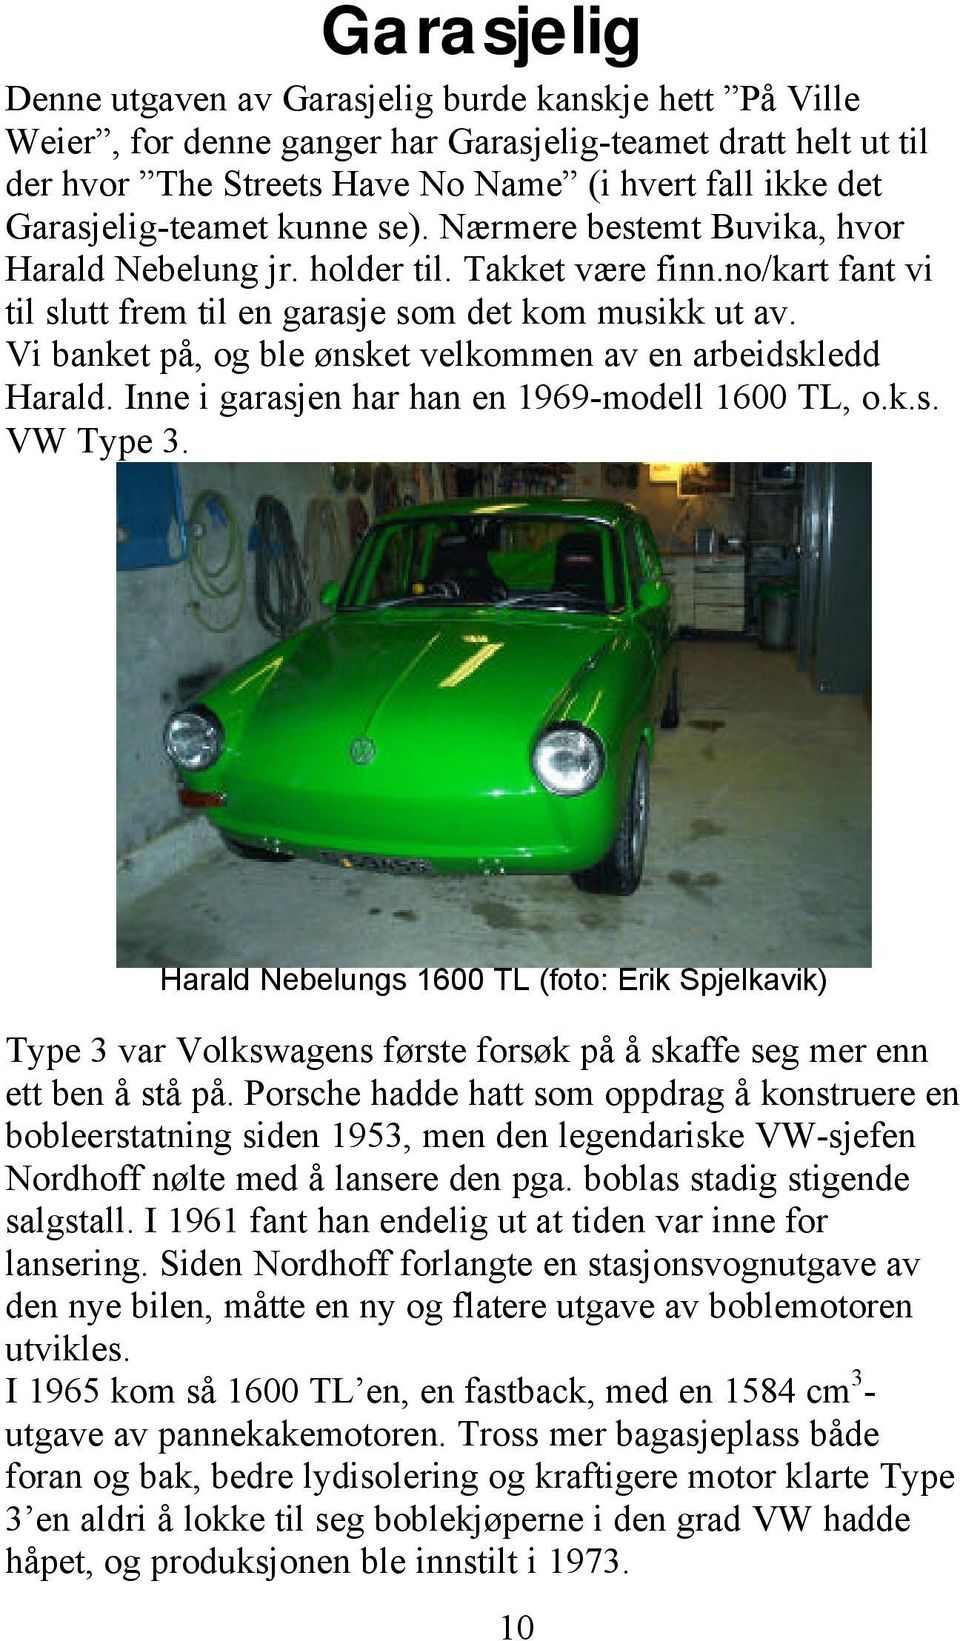 Vi banket på, og ble ønsket velkommen av en arbeidskledd Harald. Inne i garasjen har han en 1969-modell 1600 TL, o.k.s. VW Type 3.